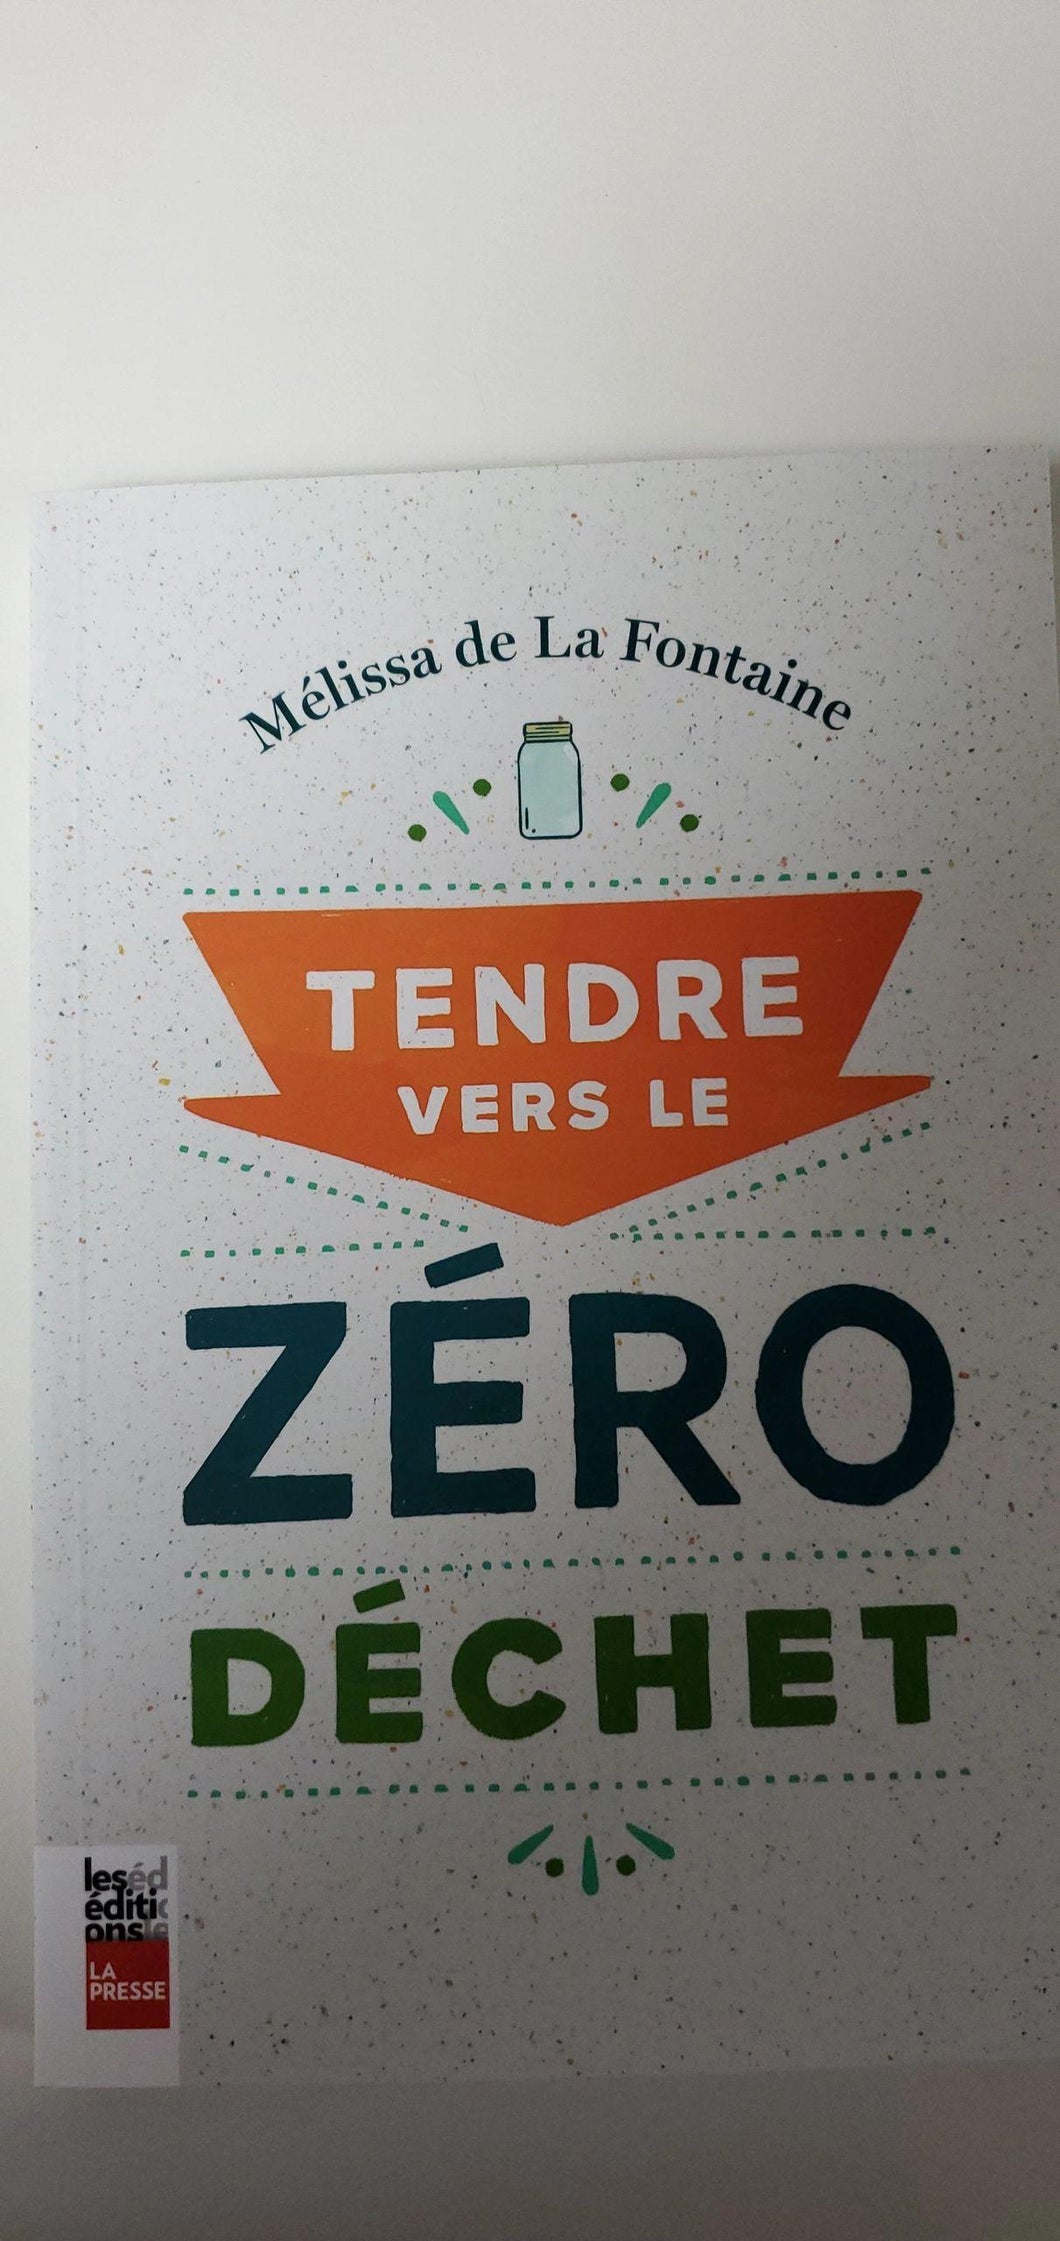 Zero waste book, author Mélissa de la Fontaine